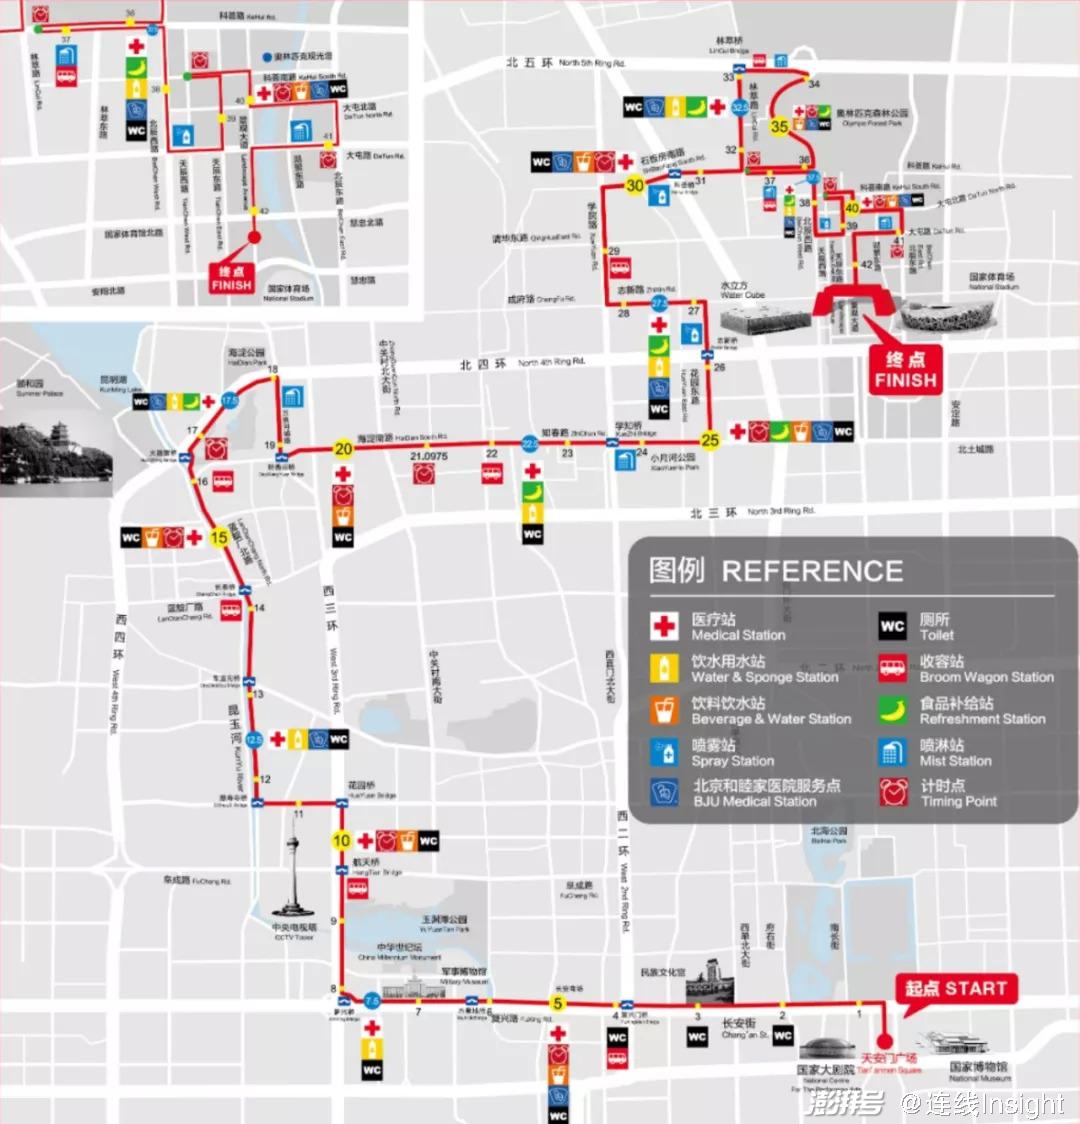 2019年北京马拉松线路图,图源其官网